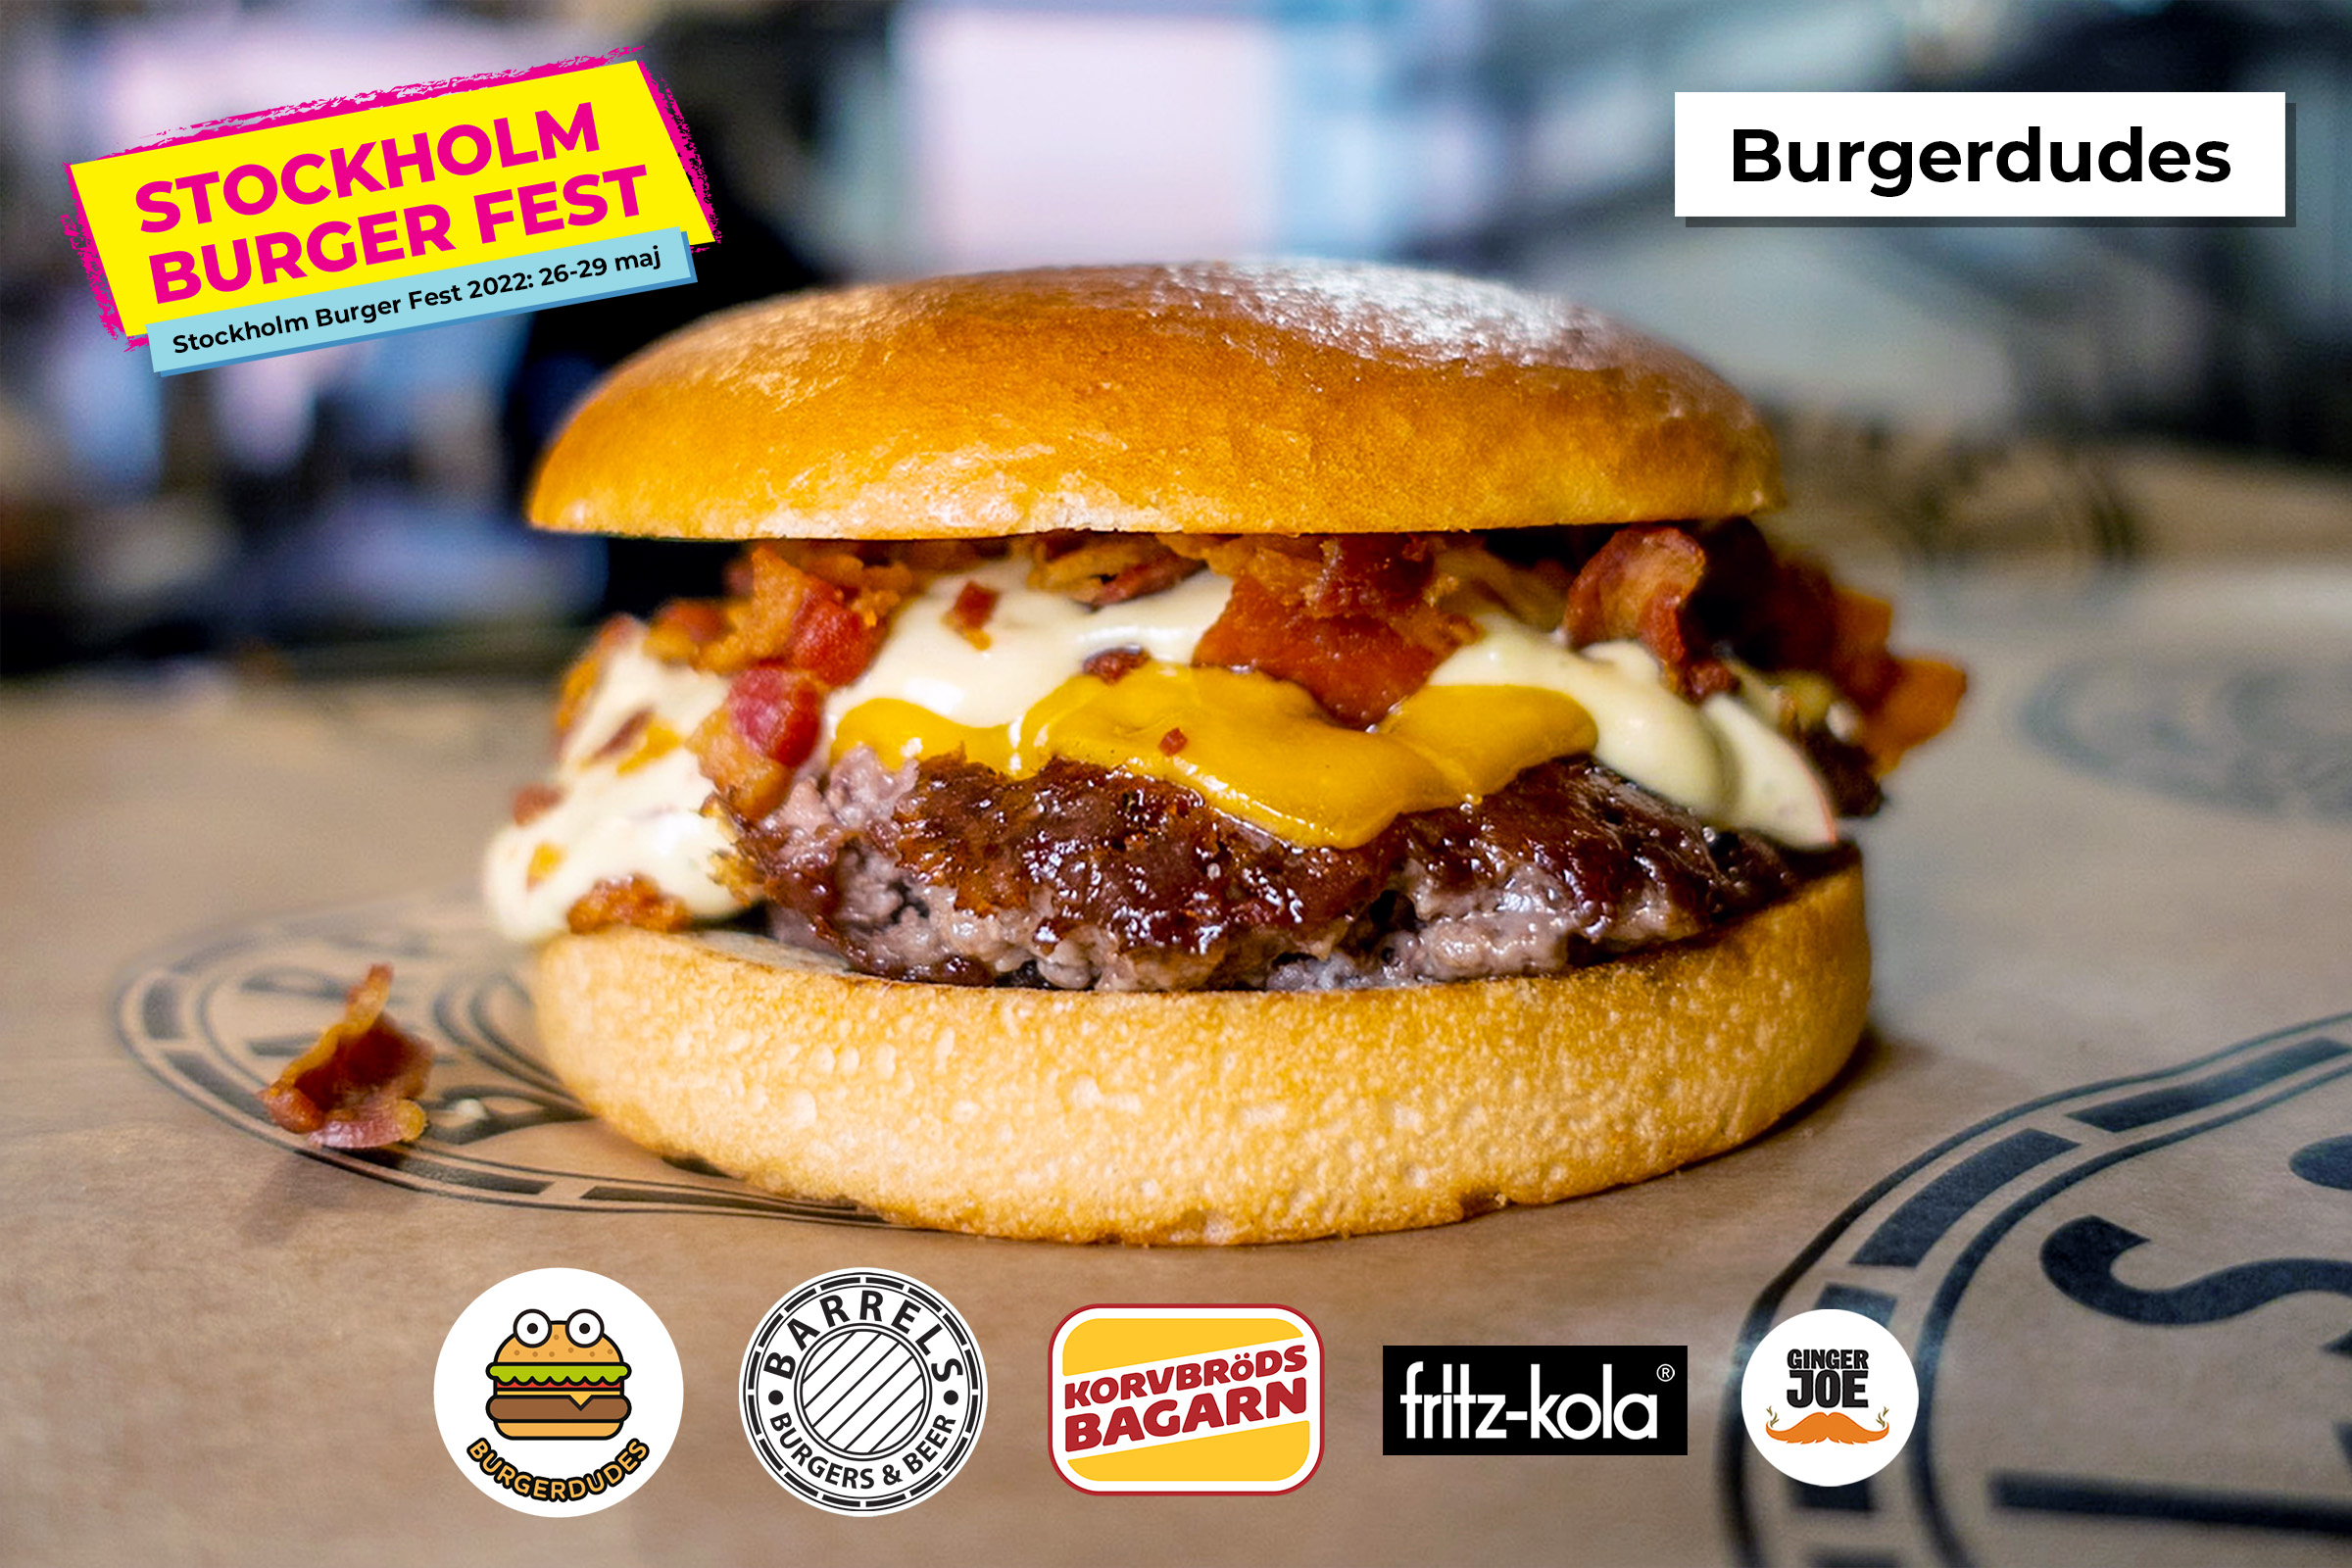 Stockholm Burger Fest 2022: Burgerdudes